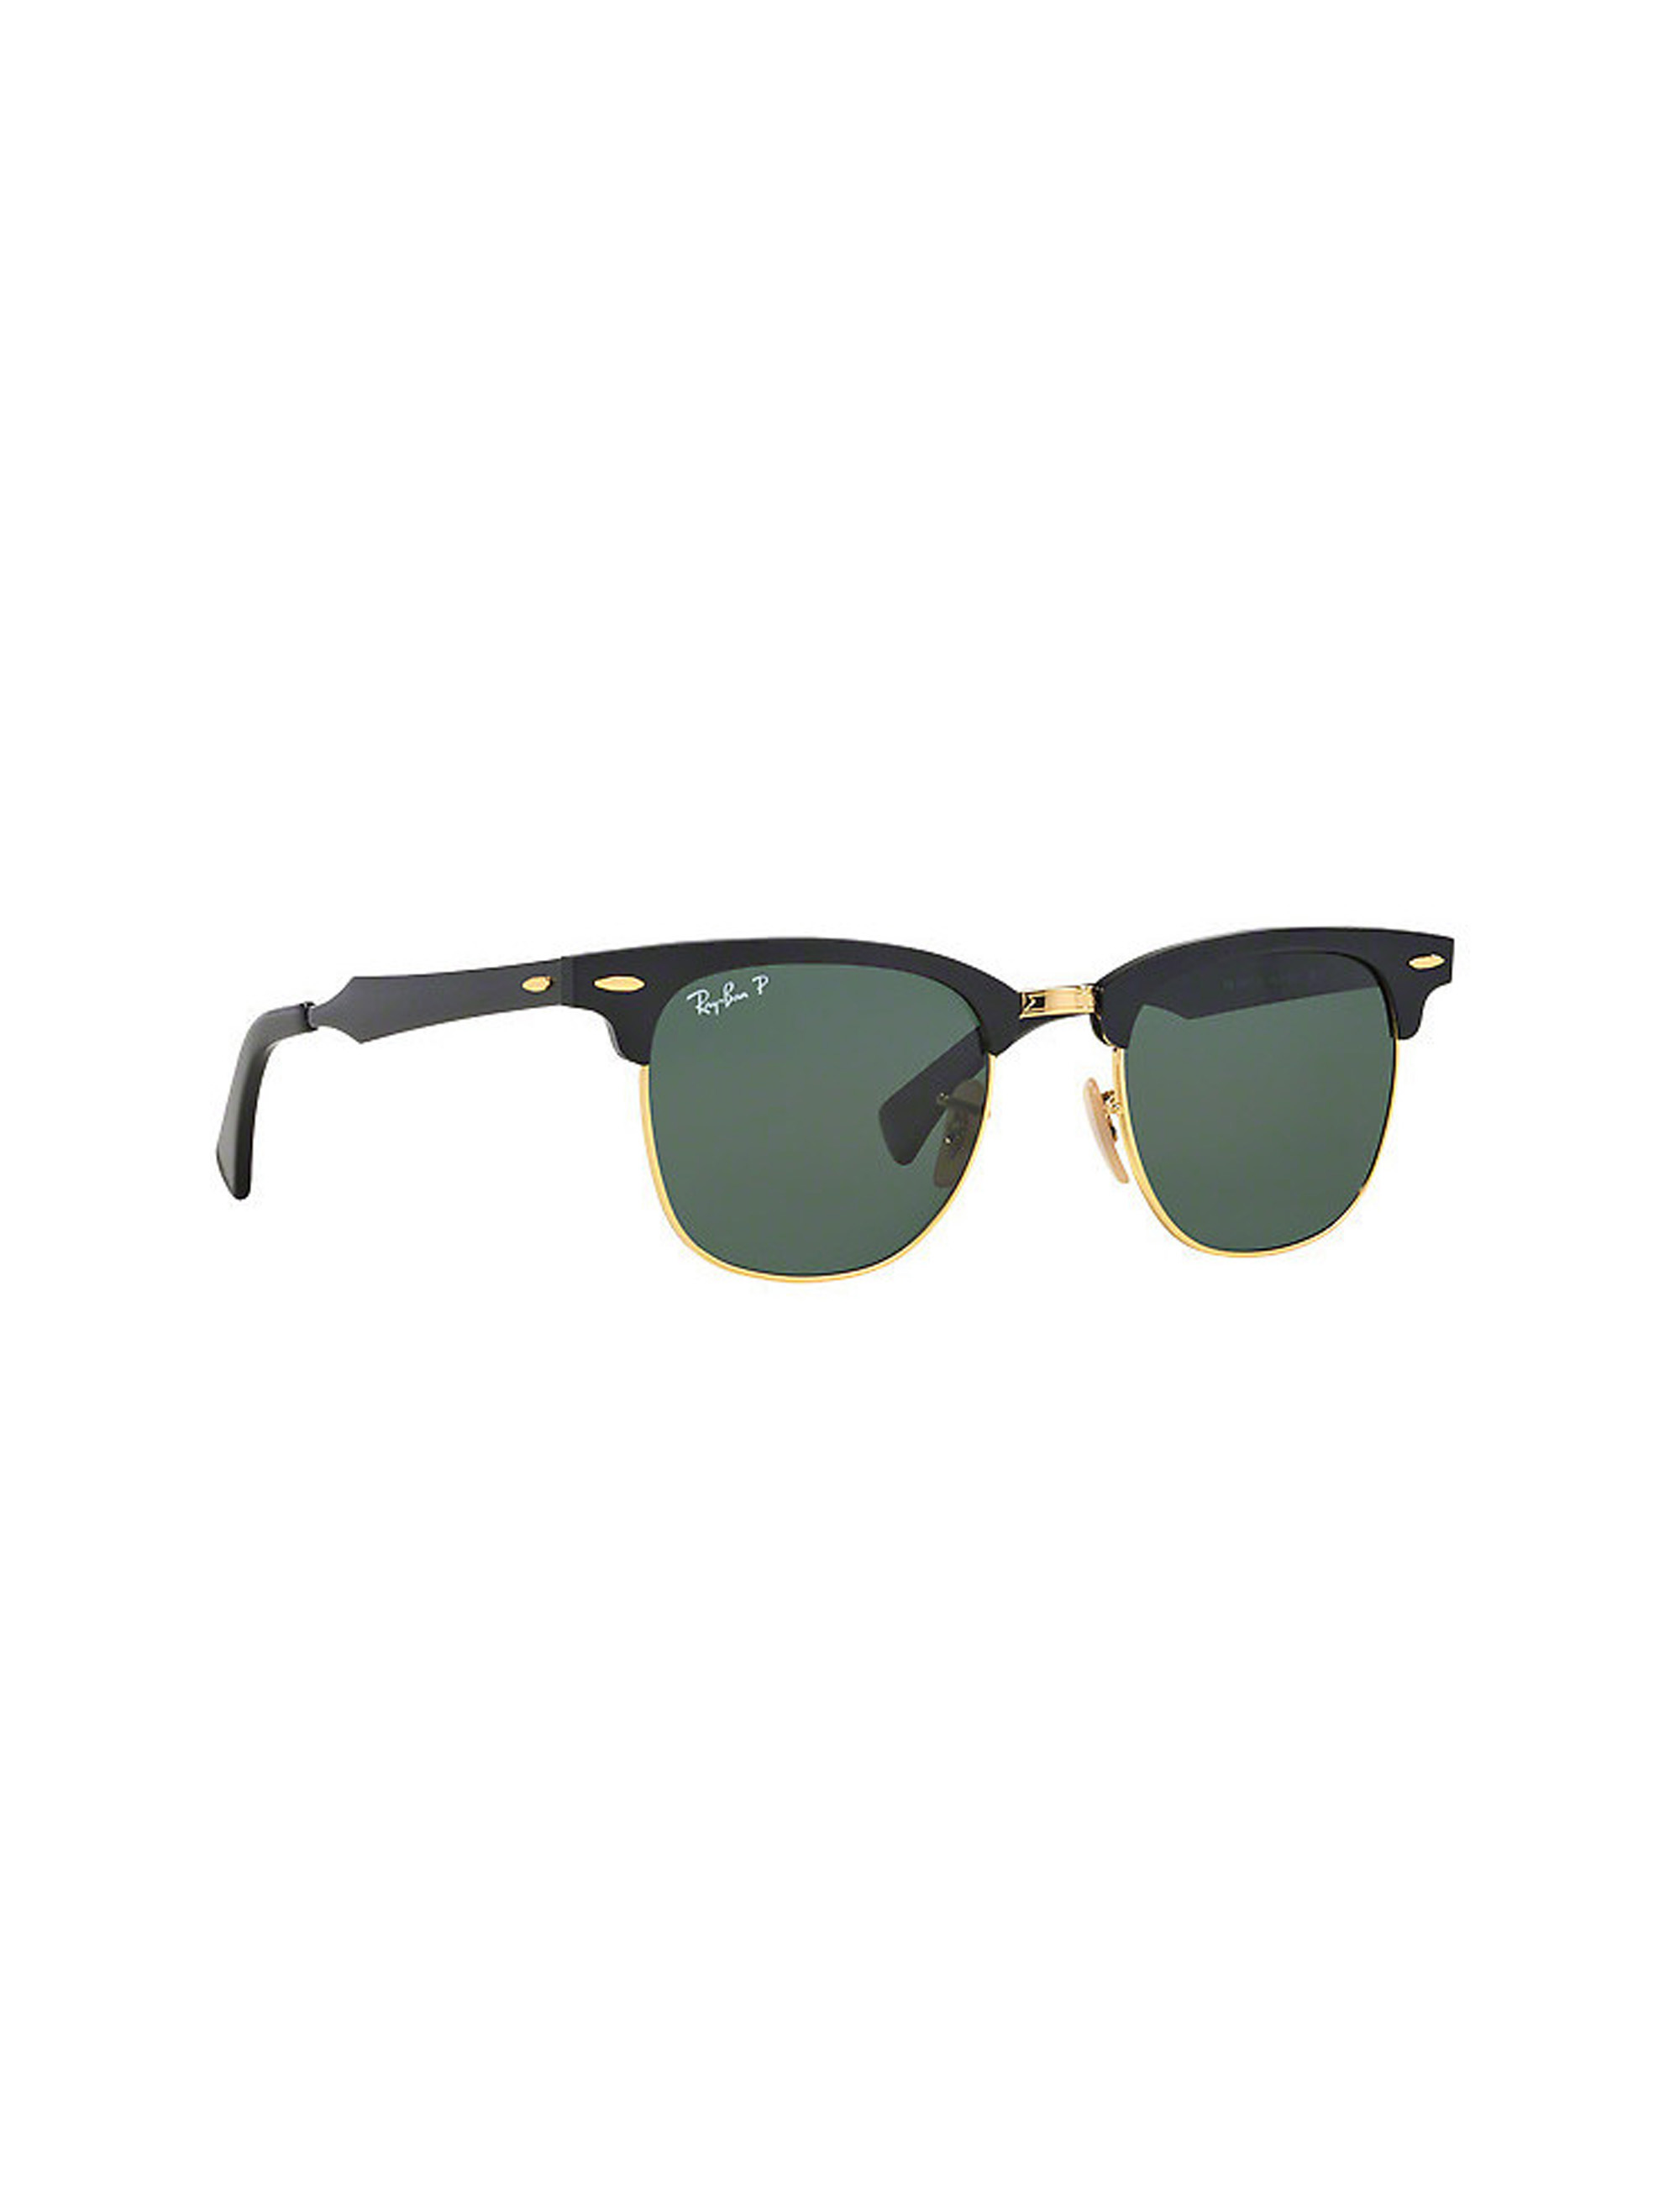 عینک آفتابی ری بن مدل 3507-136/N5 - مشکی - 4